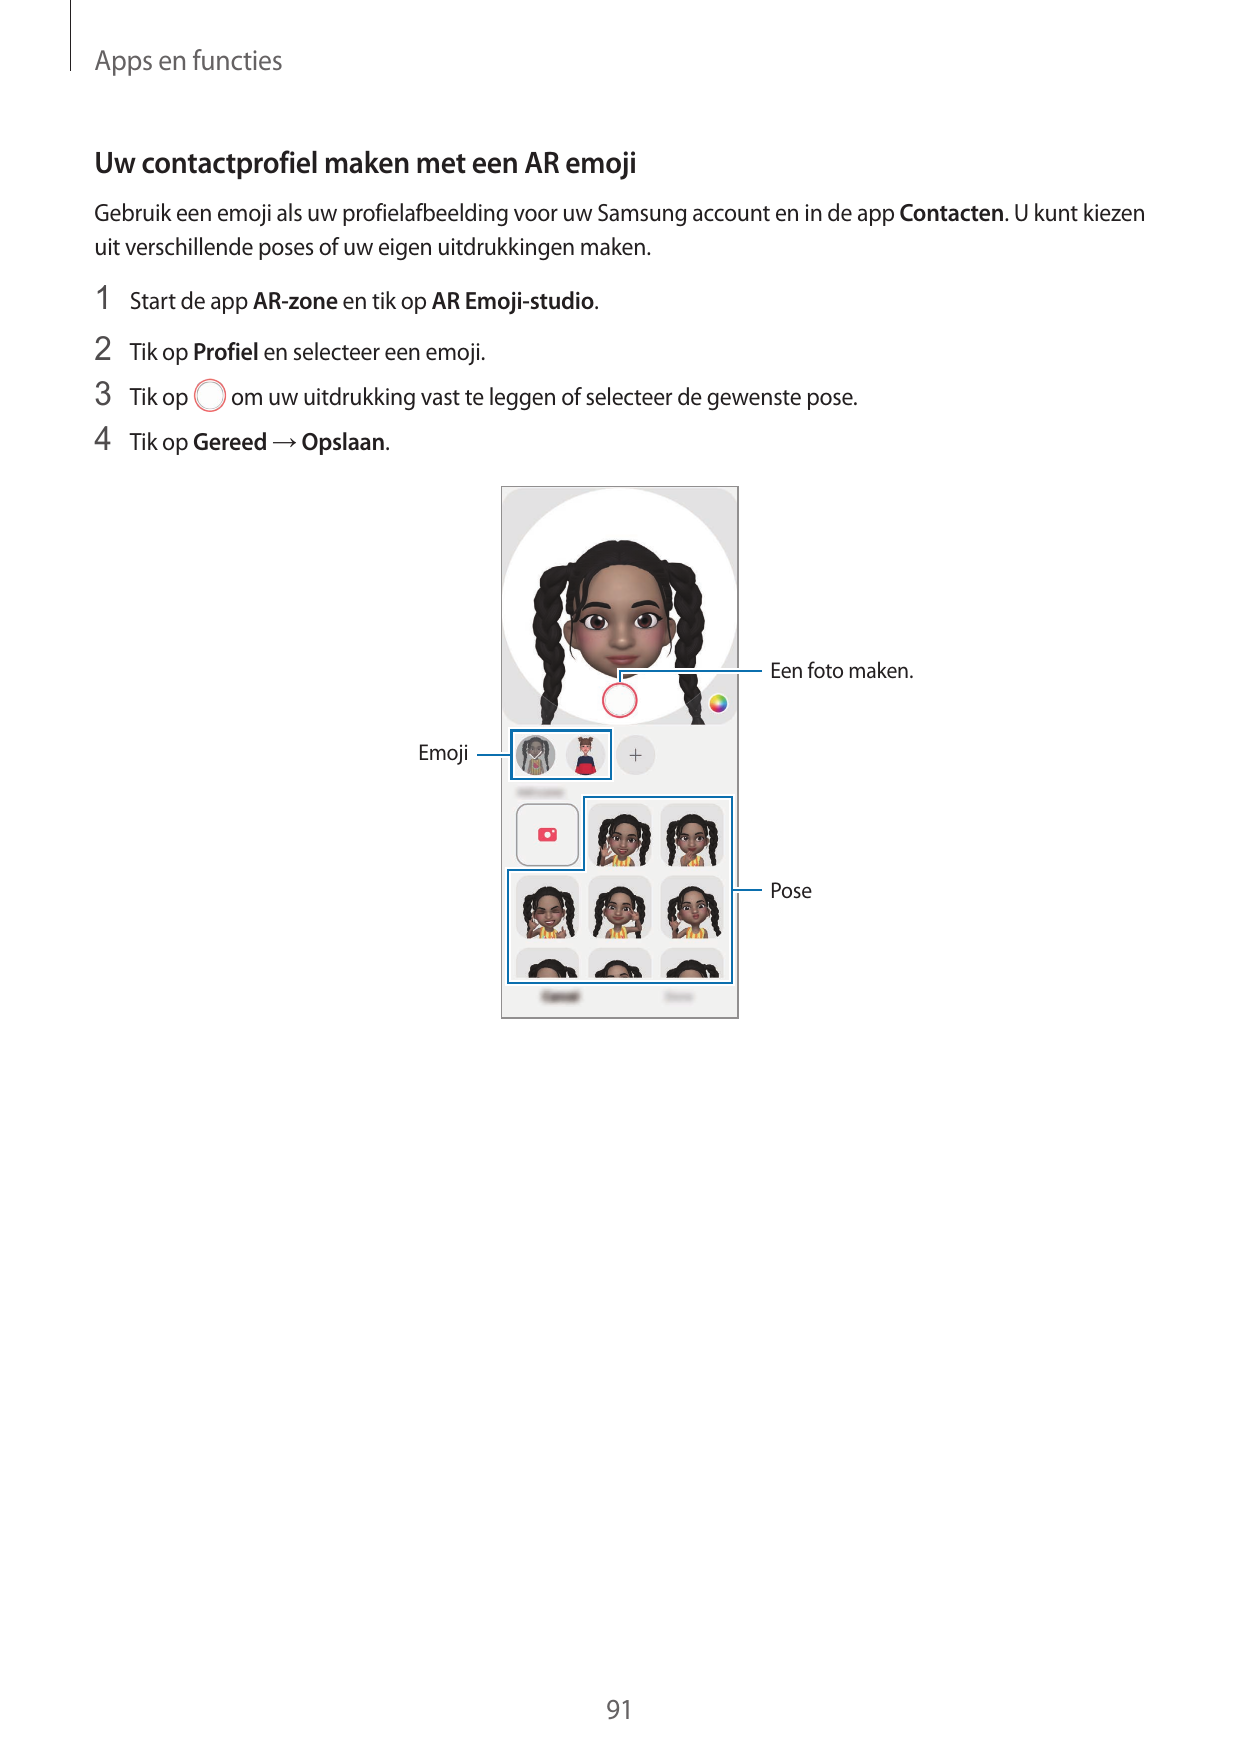 Apps en functiesUw contactprofiel maken met een AR emojiGebruik een emoji als uw profielafbeelding voor uw Samsung account en in